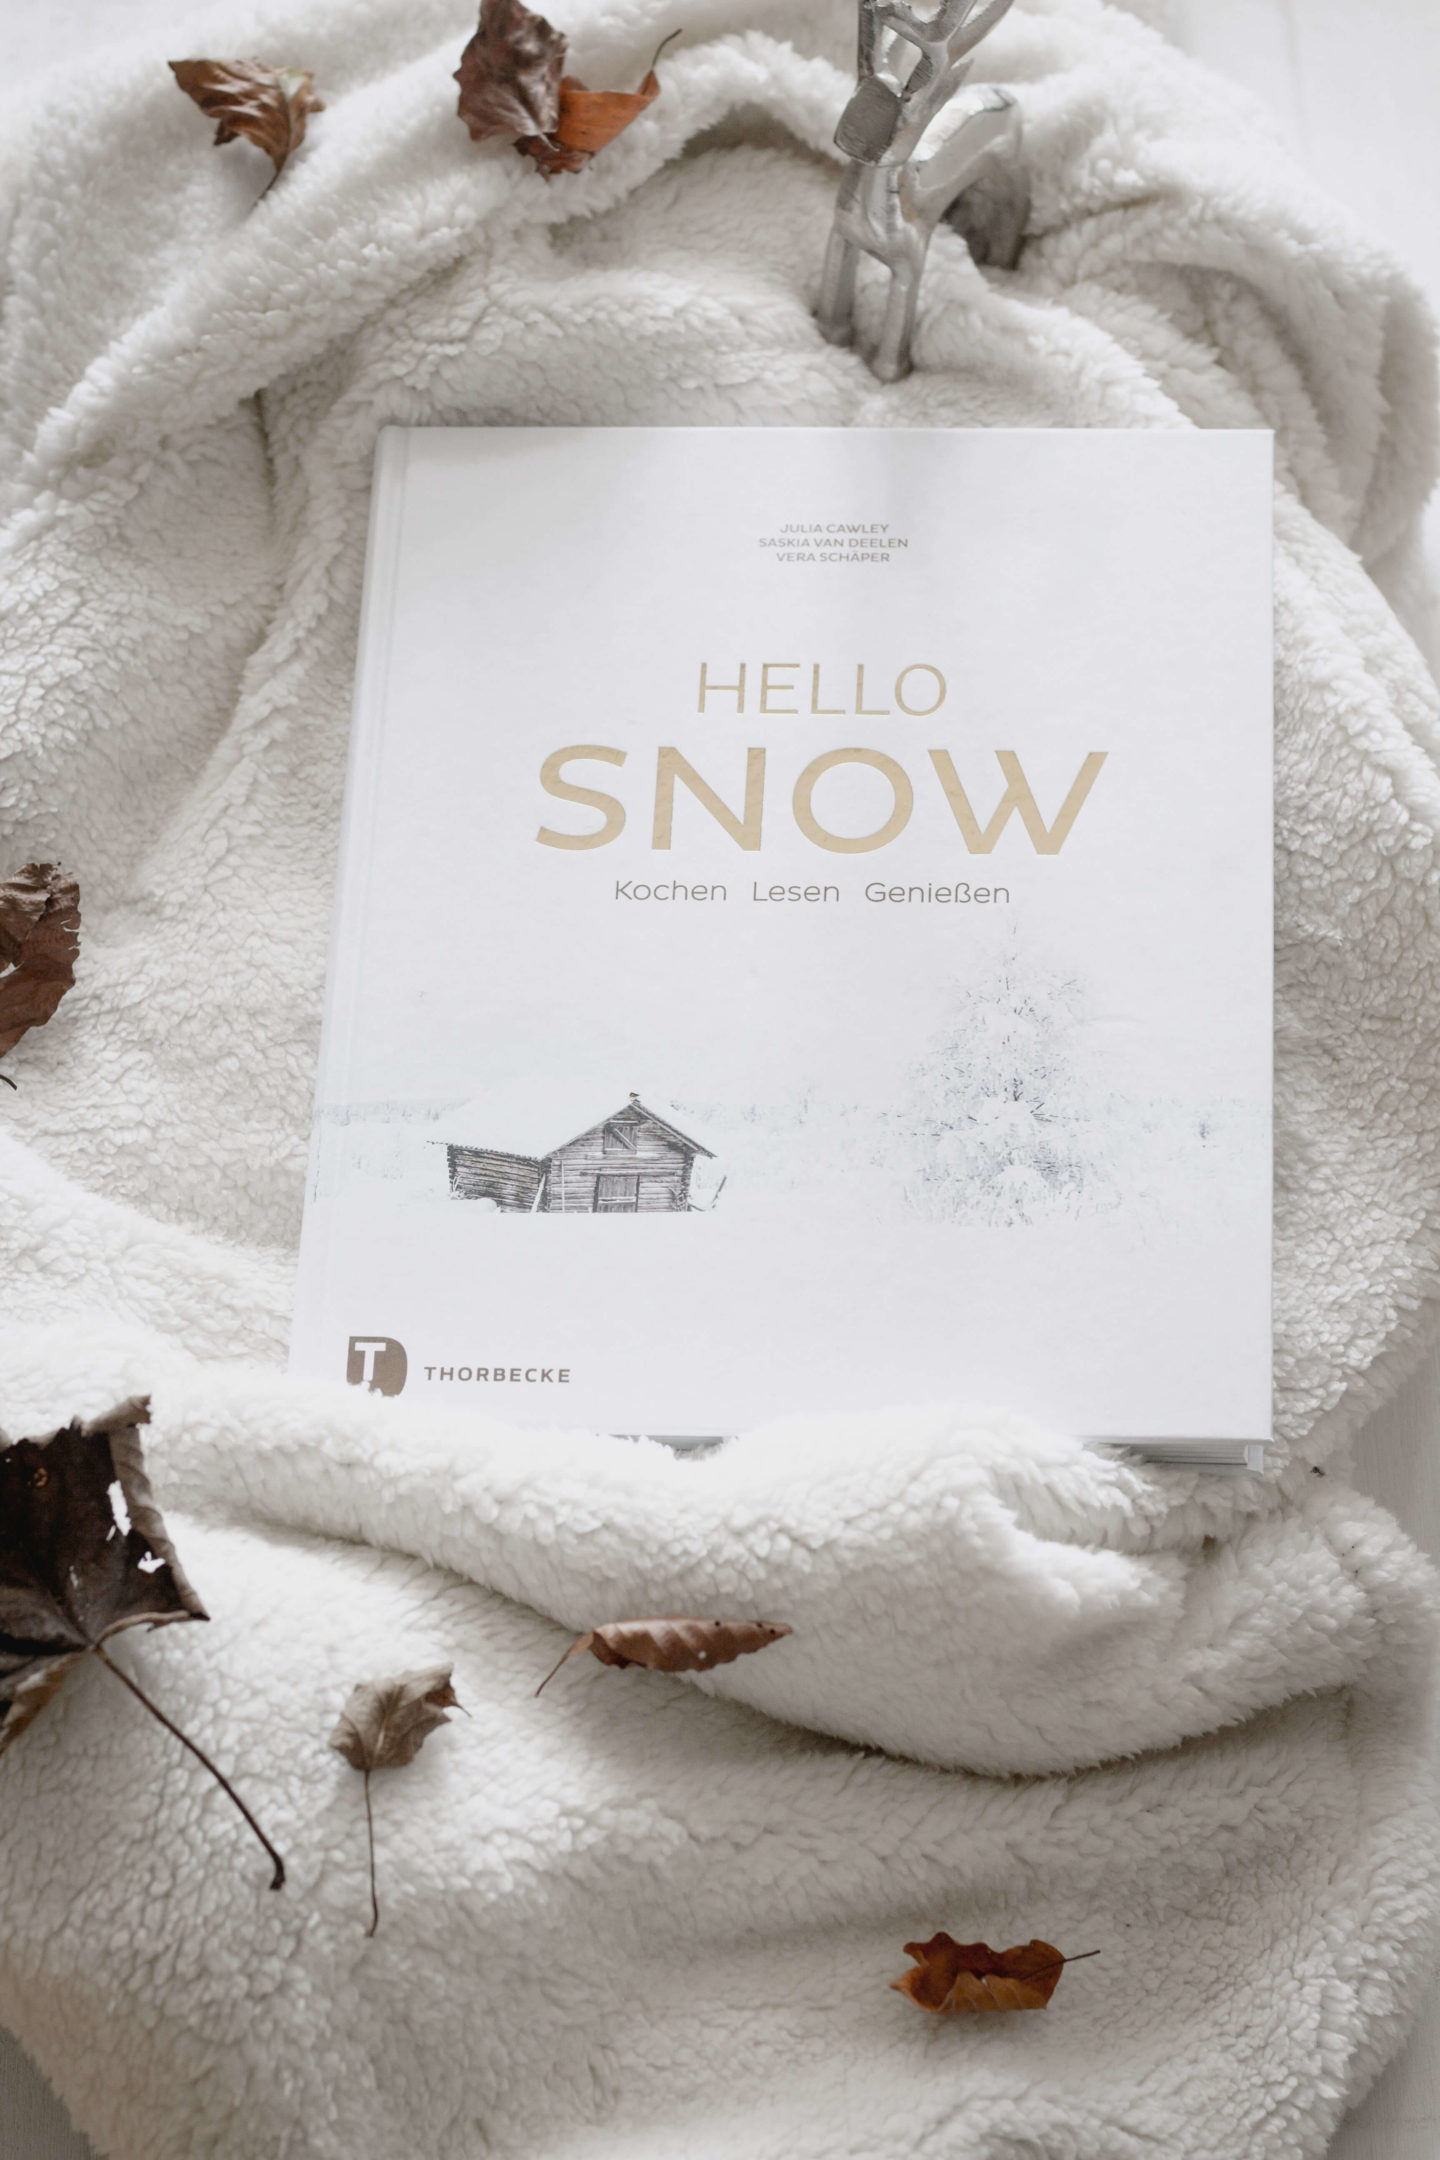 Hello Snow Kochbuch- Kochen -Lesen -Genießen- Winterzeit – Soulfood – Schnee – Dein HomeSpa – Food & Lifestyleblog aus dem Mostviertel-Ötscher